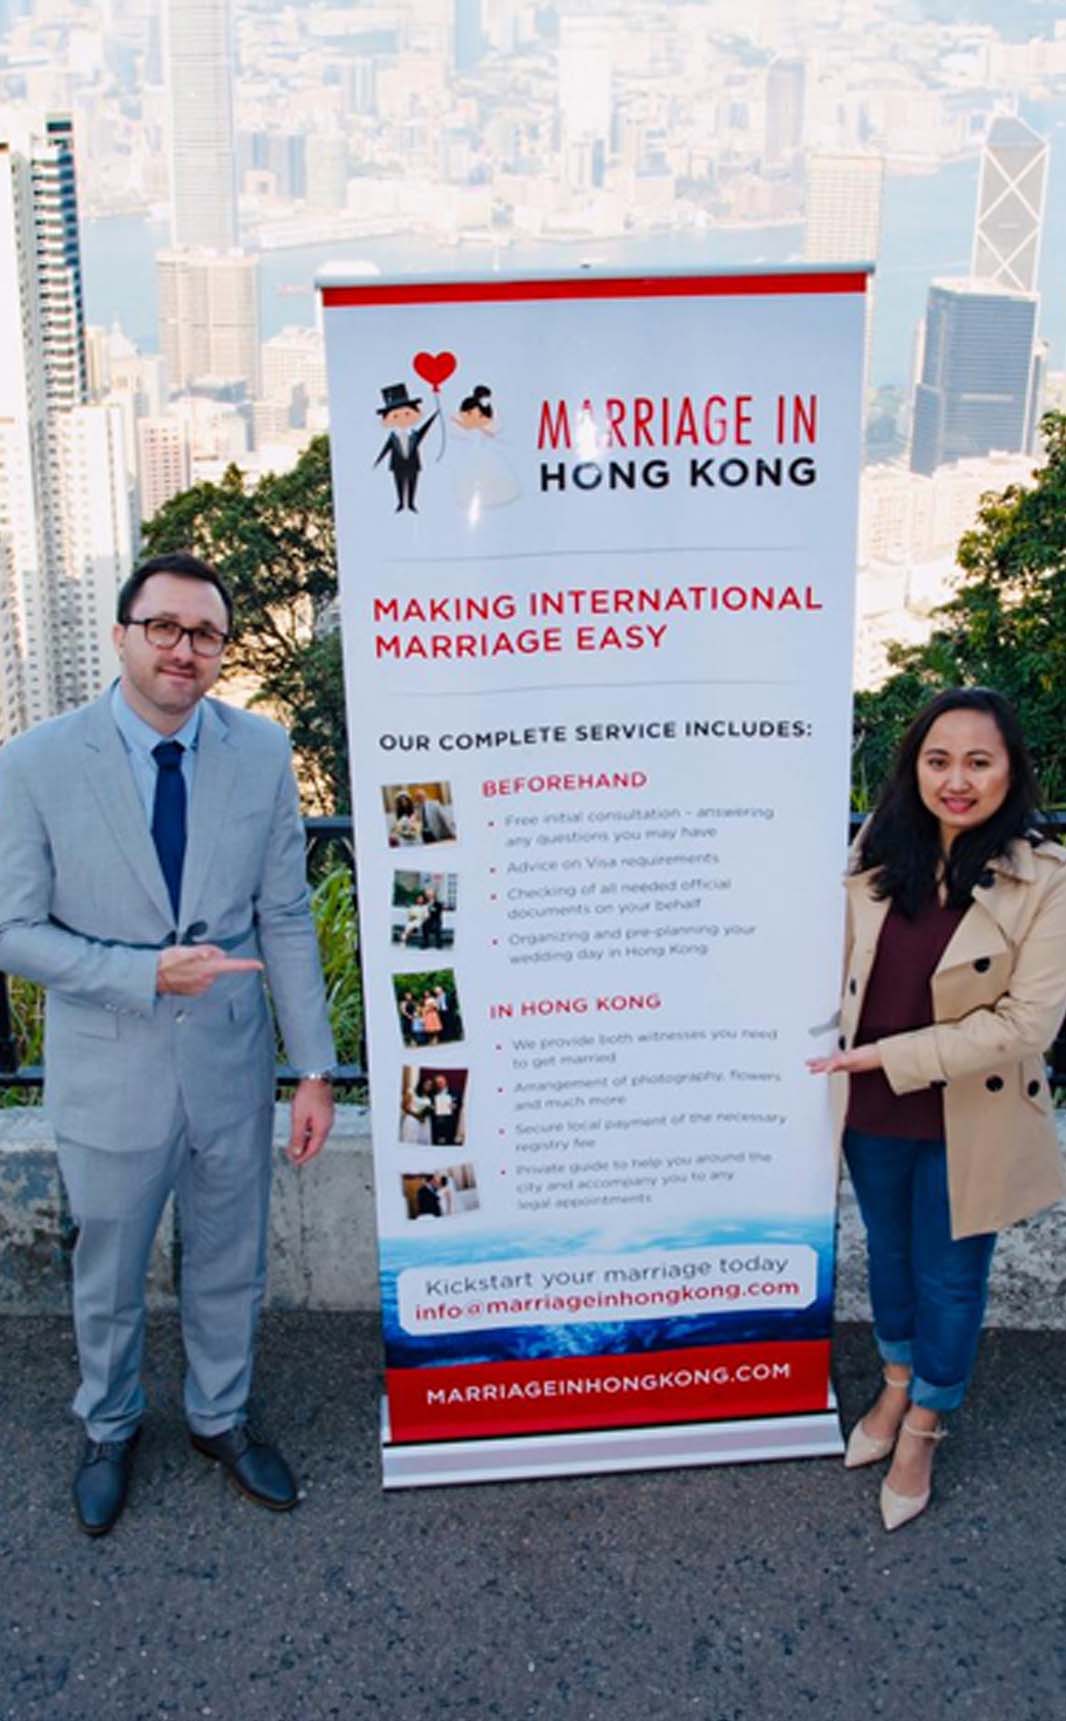 Filipina heiraten - Unsere Geschichte begann im schönen Manila